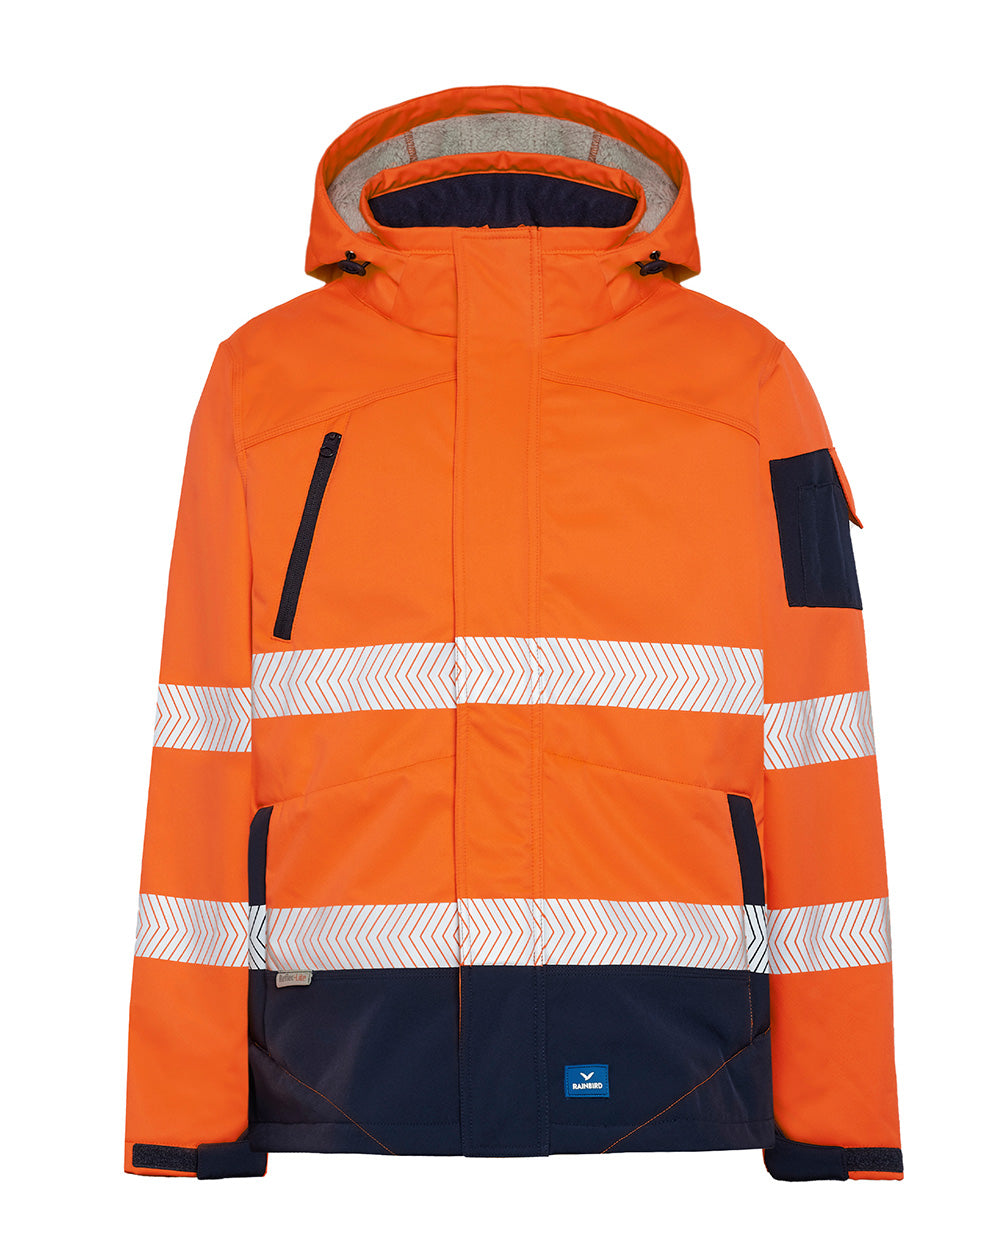 Jones Hi-Vis Softshell Coat in Fluoro Orange & Navy